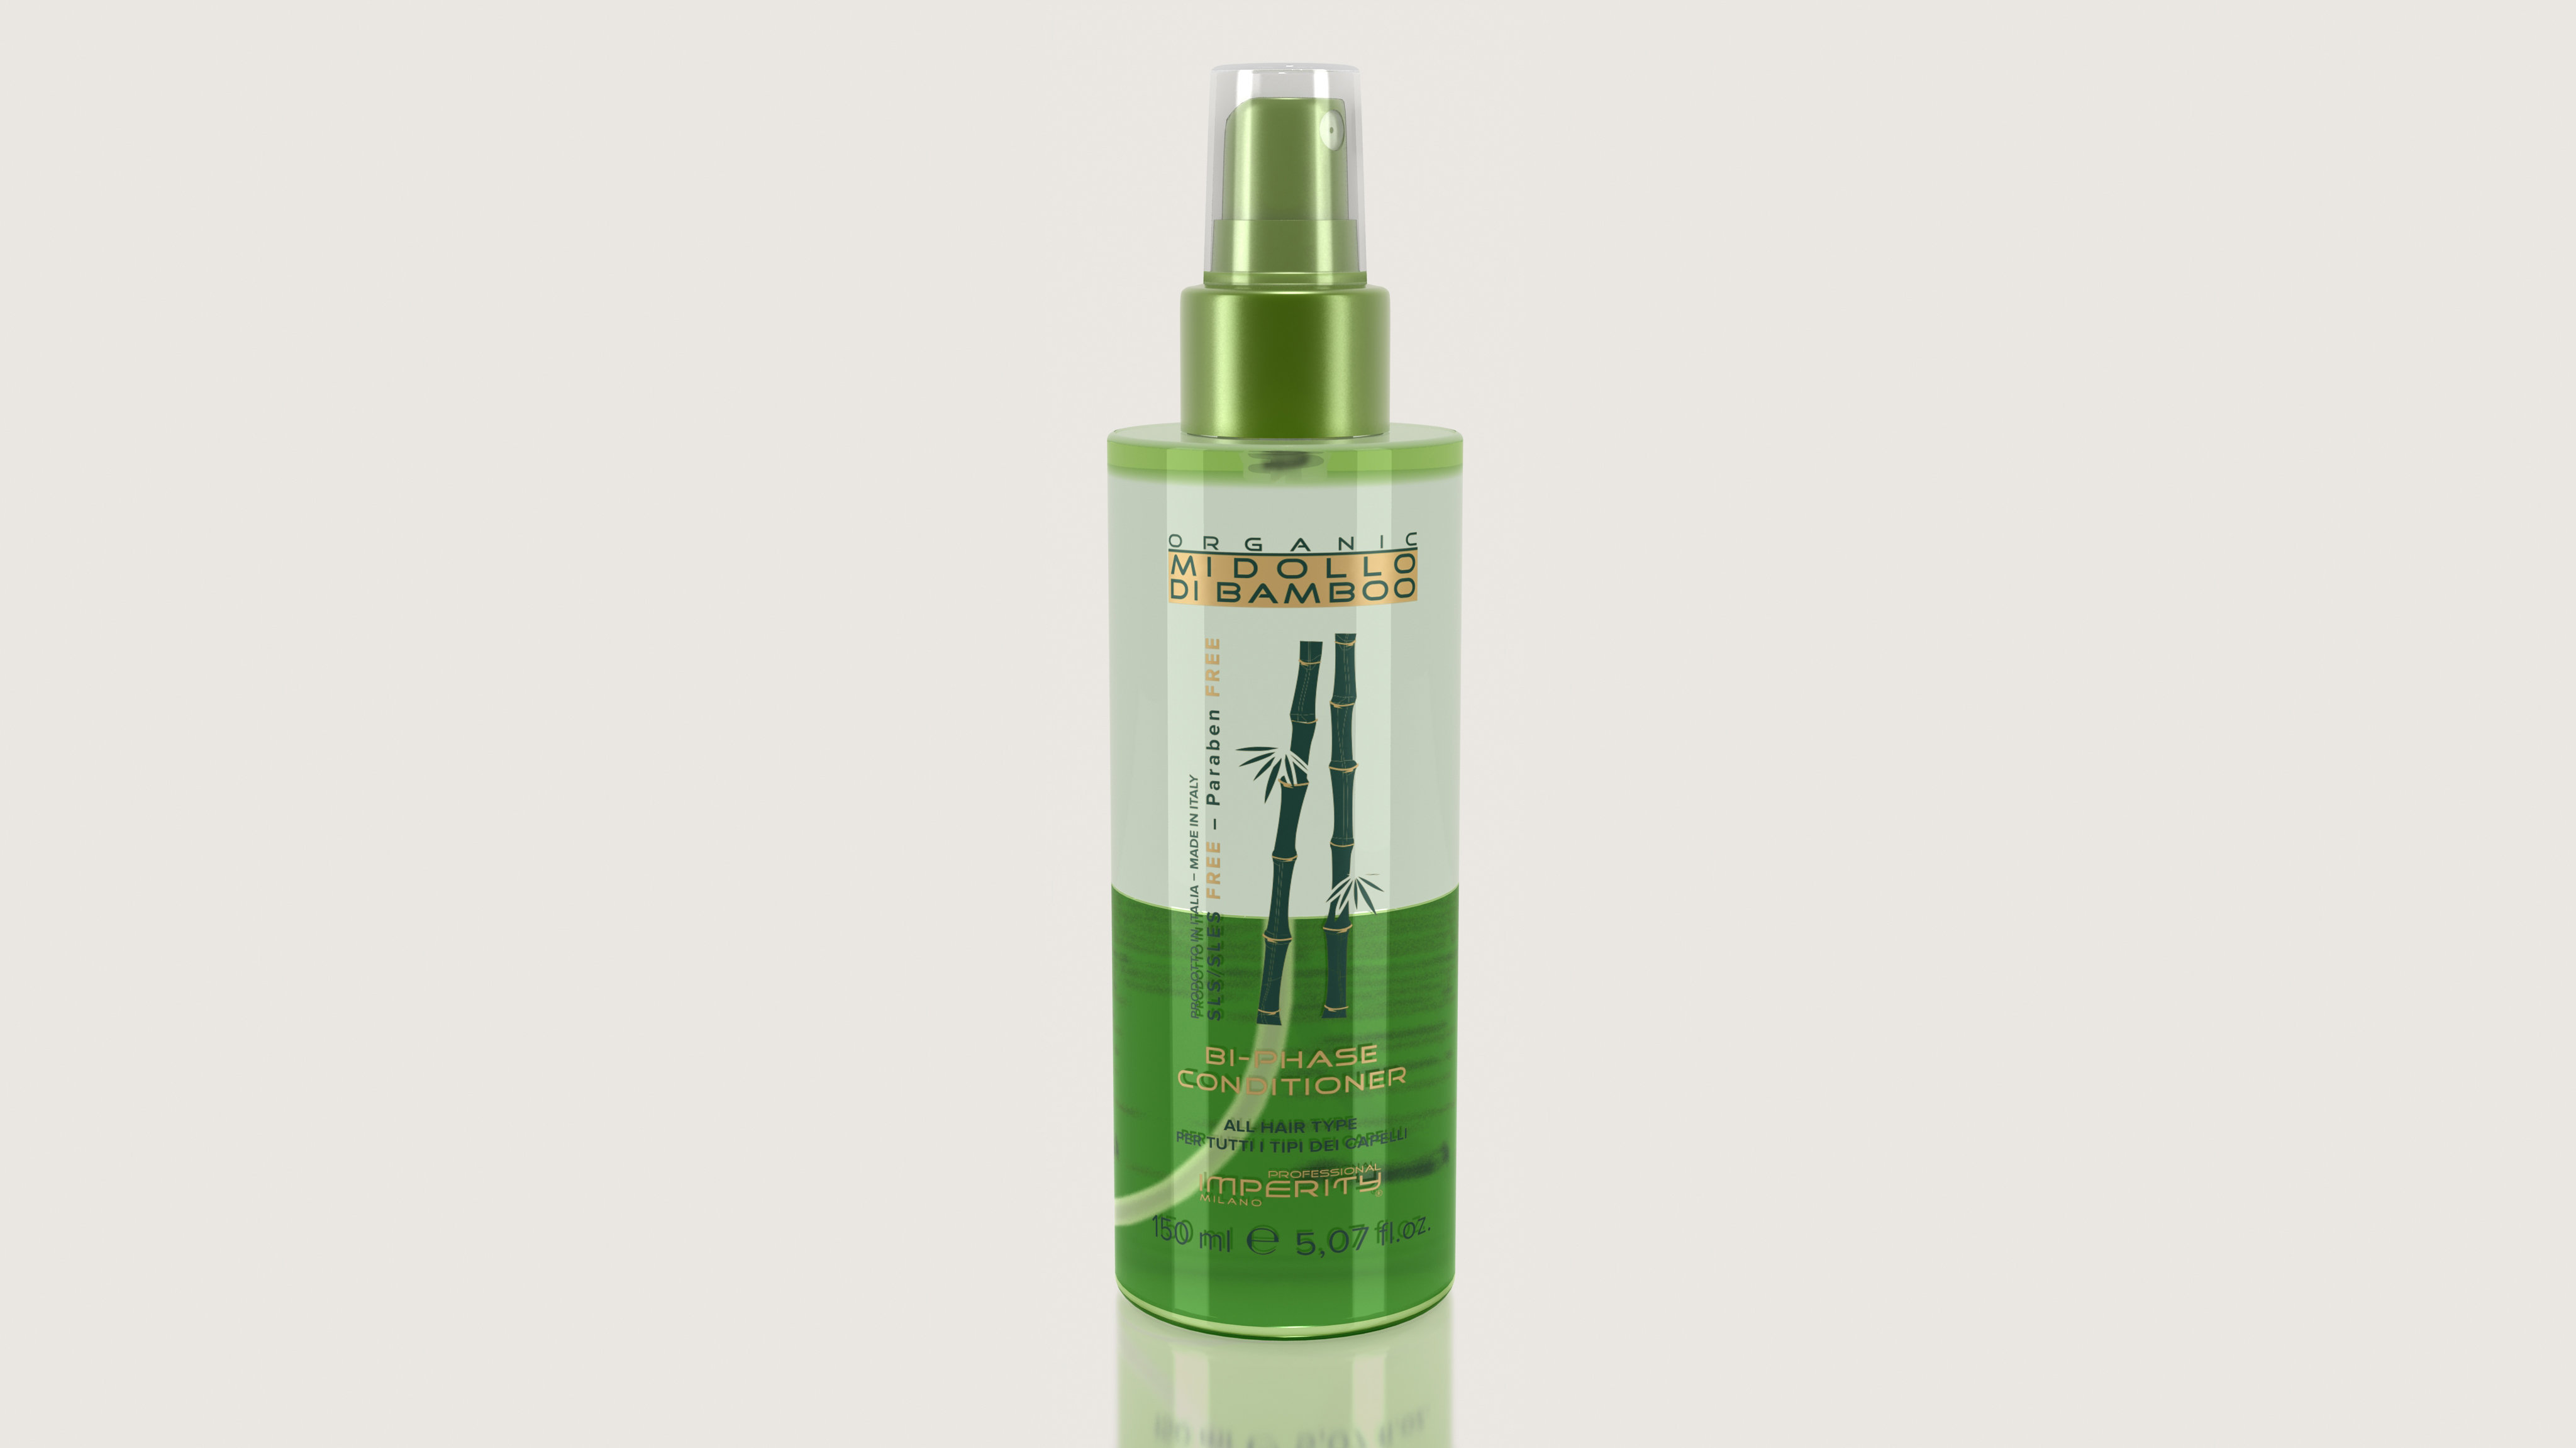 Imperity Organic Midollo Di Bamboo Kétfázisú Hajkondicionáló Spray 150 ml